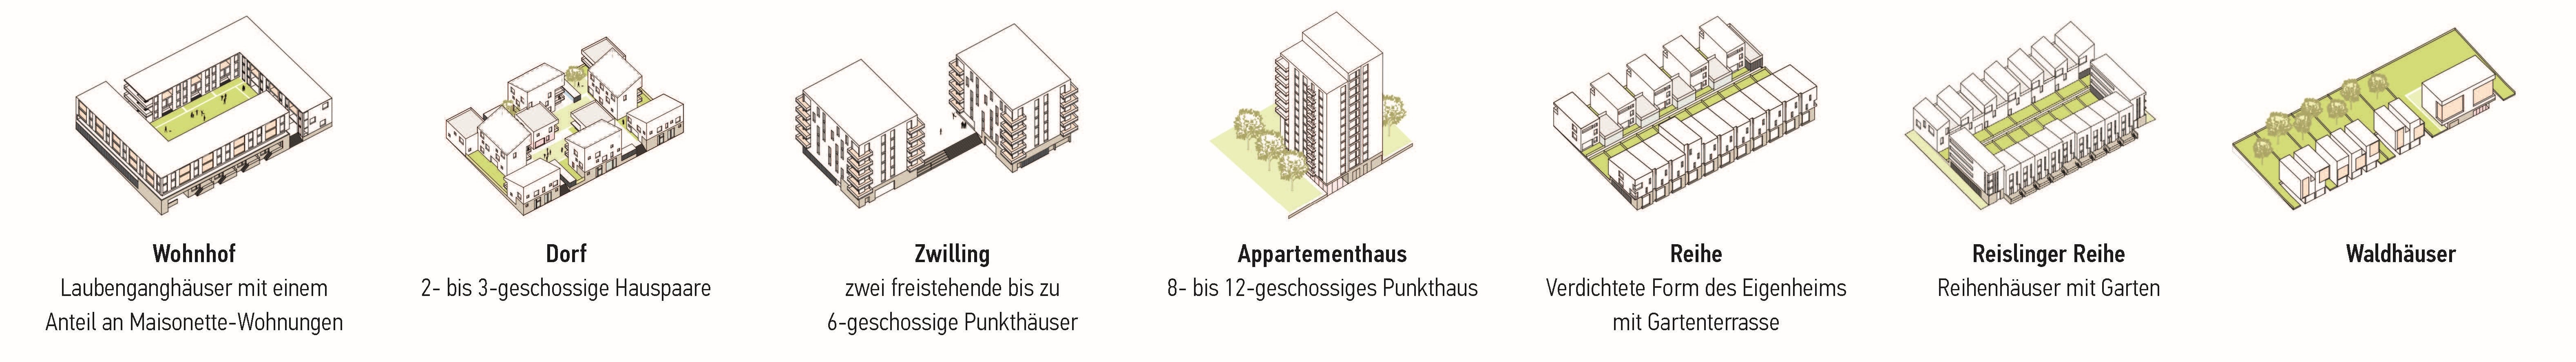 Darstellung der Wohntypen von links nach rechts "Wohnhof", "Dorf", "Zwilling", "Appartementhaus", "Reihe", "Reislinger Reihe" und "Waldhäuser"